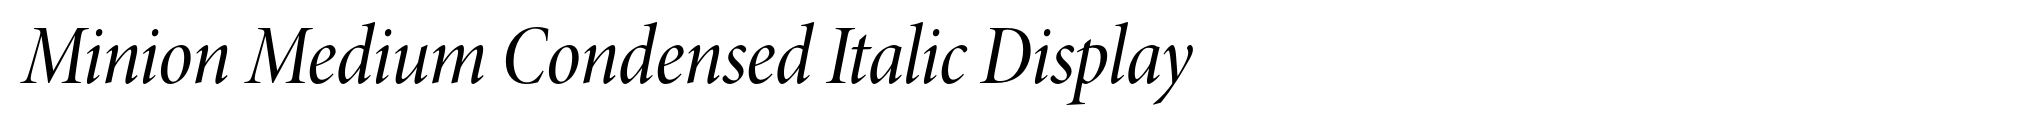 Minion Medium Condensed Italic Display image